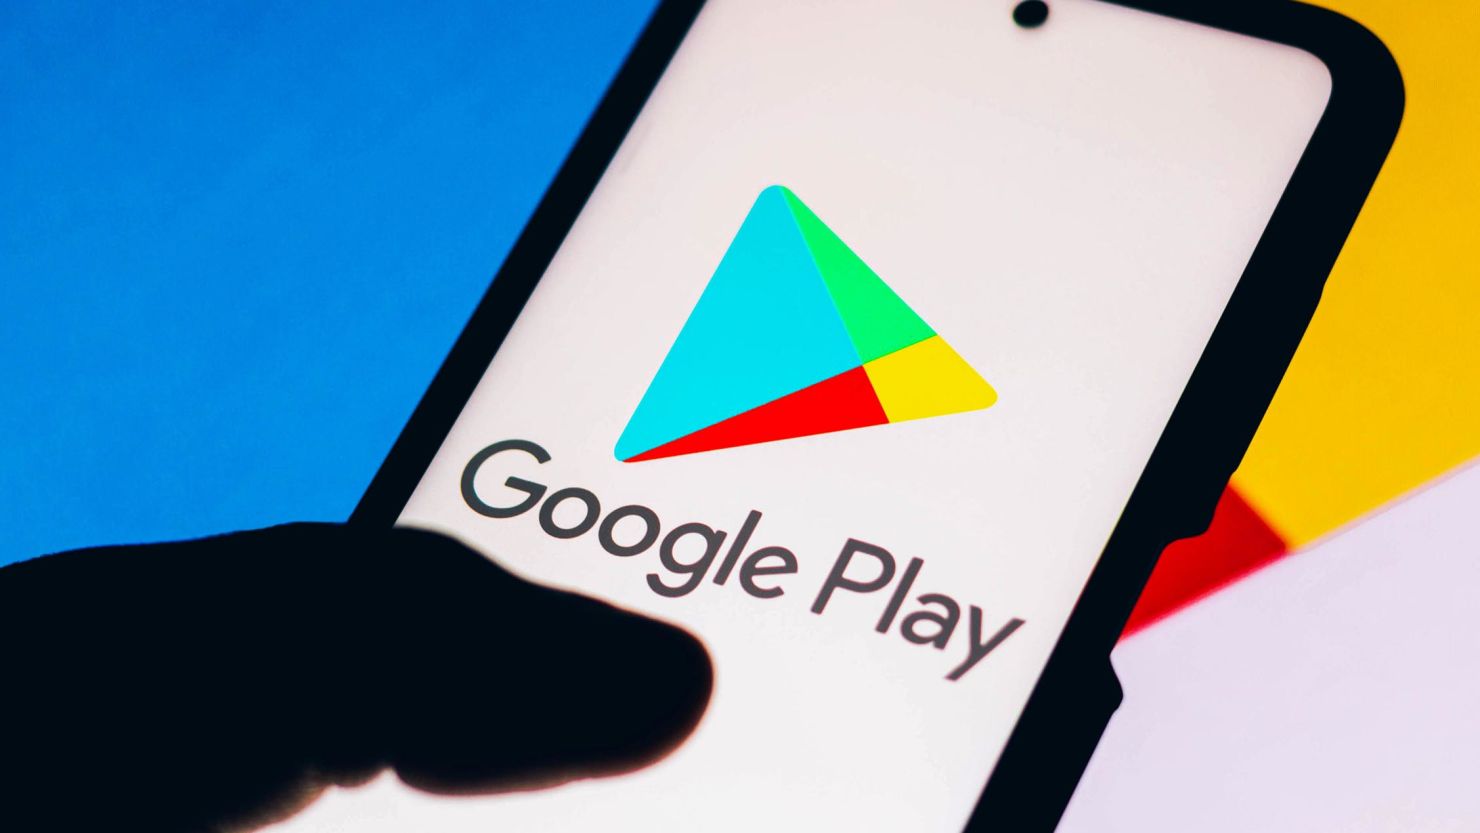 Google Play Store introducerer ny betalingsmulighed "Bed en anden om at betale"